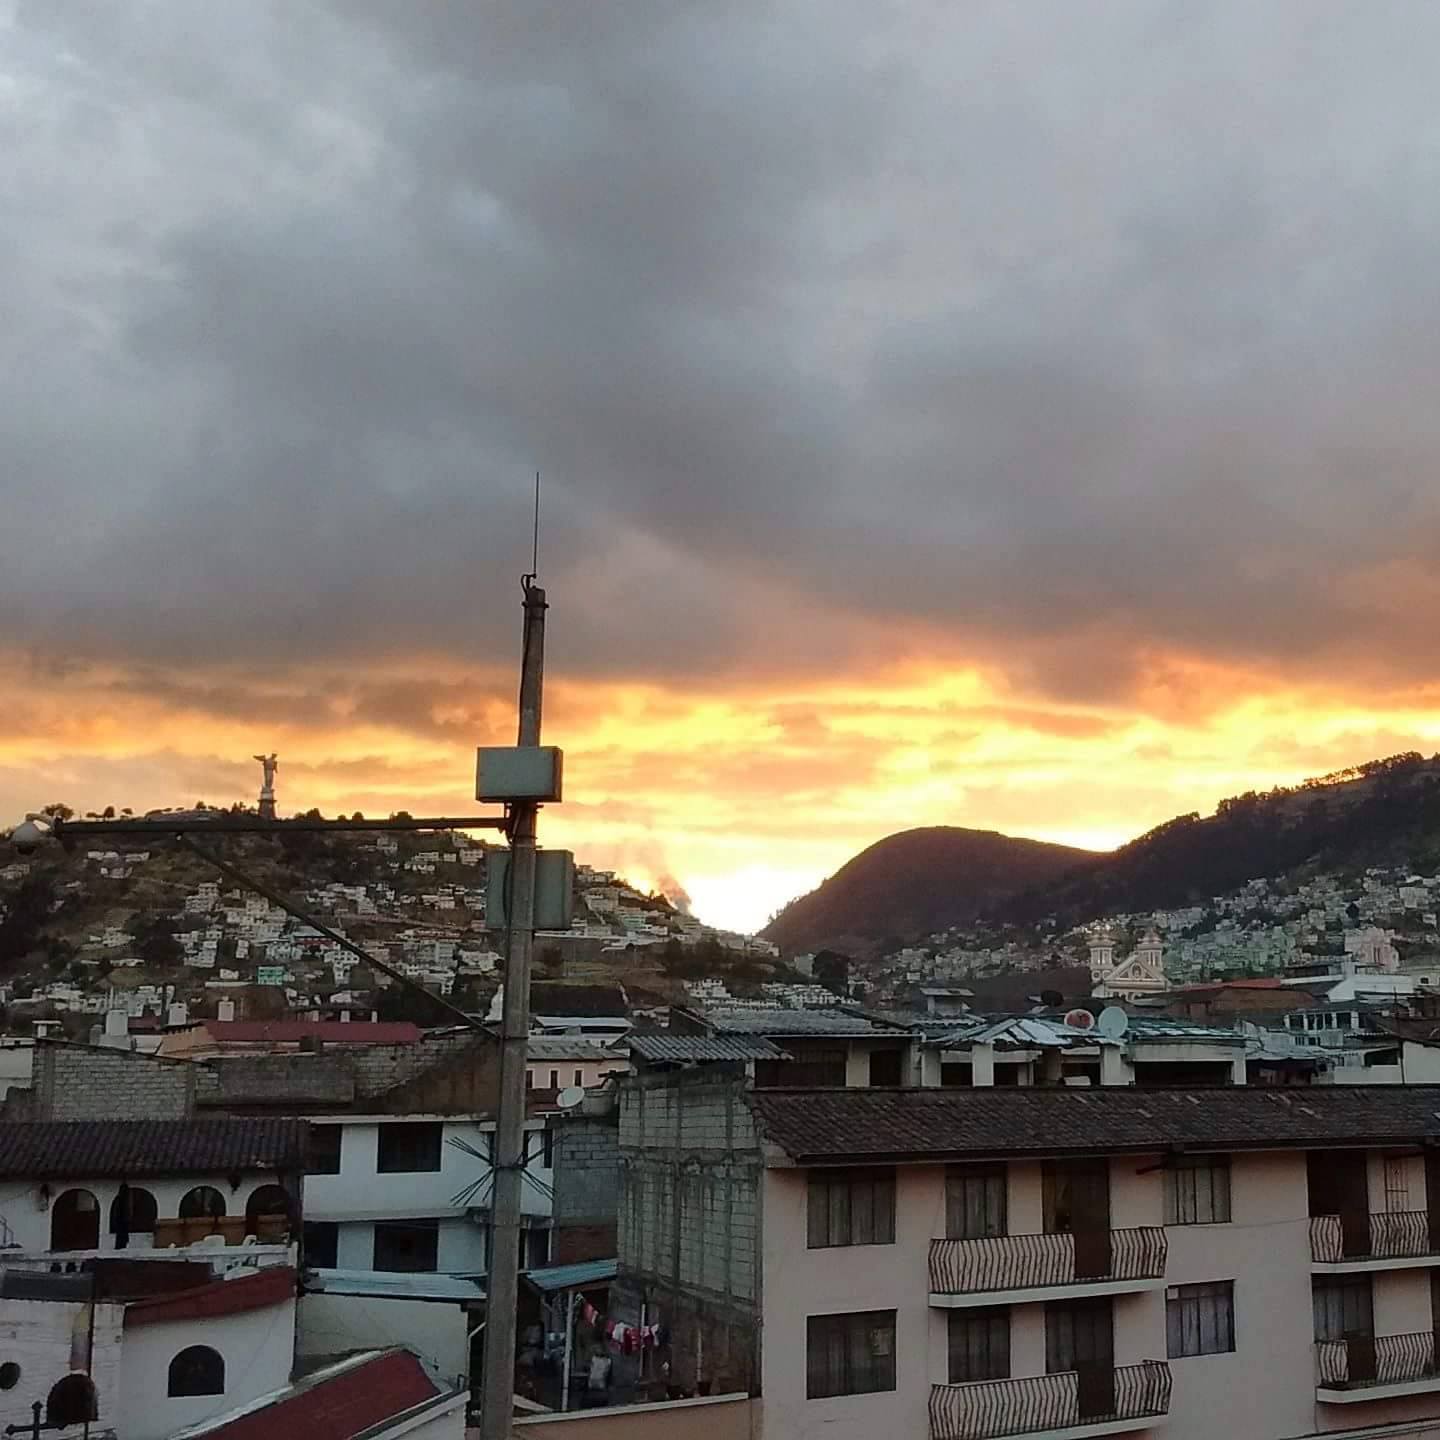 Quito with the Panecillo.